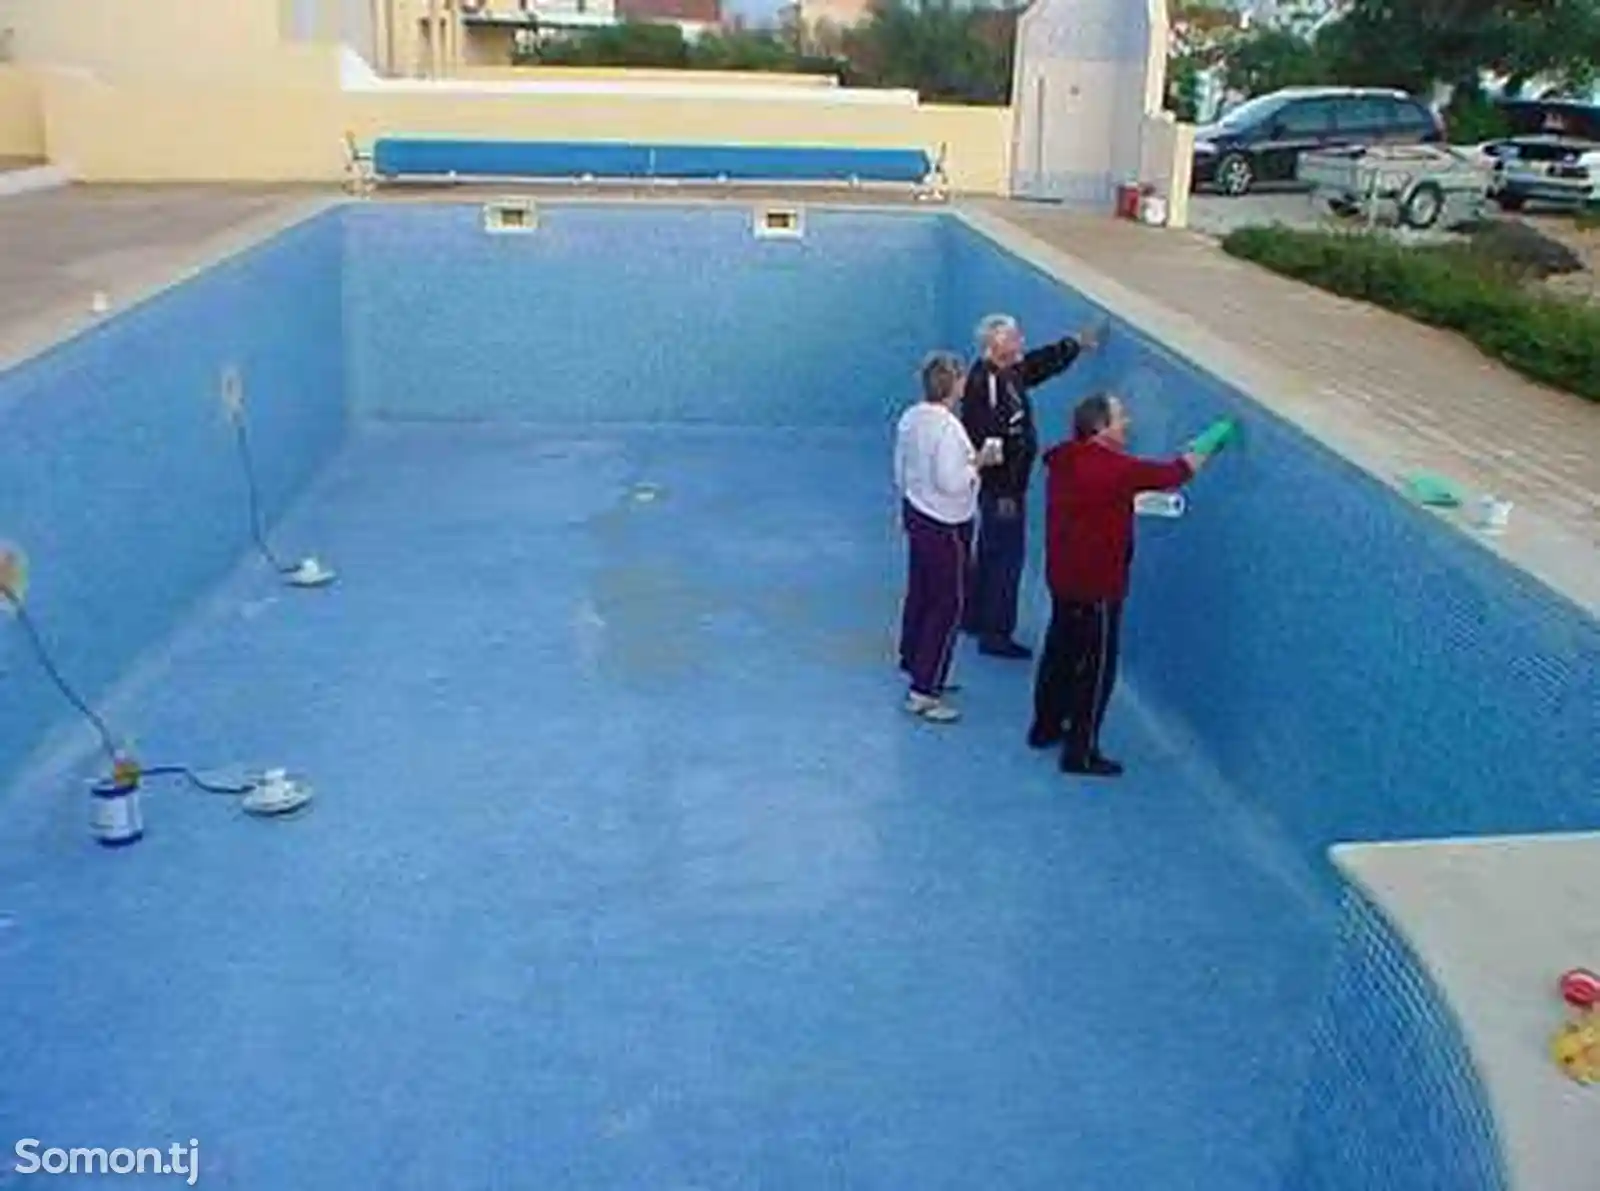 Услуга очисткаи бассейнов